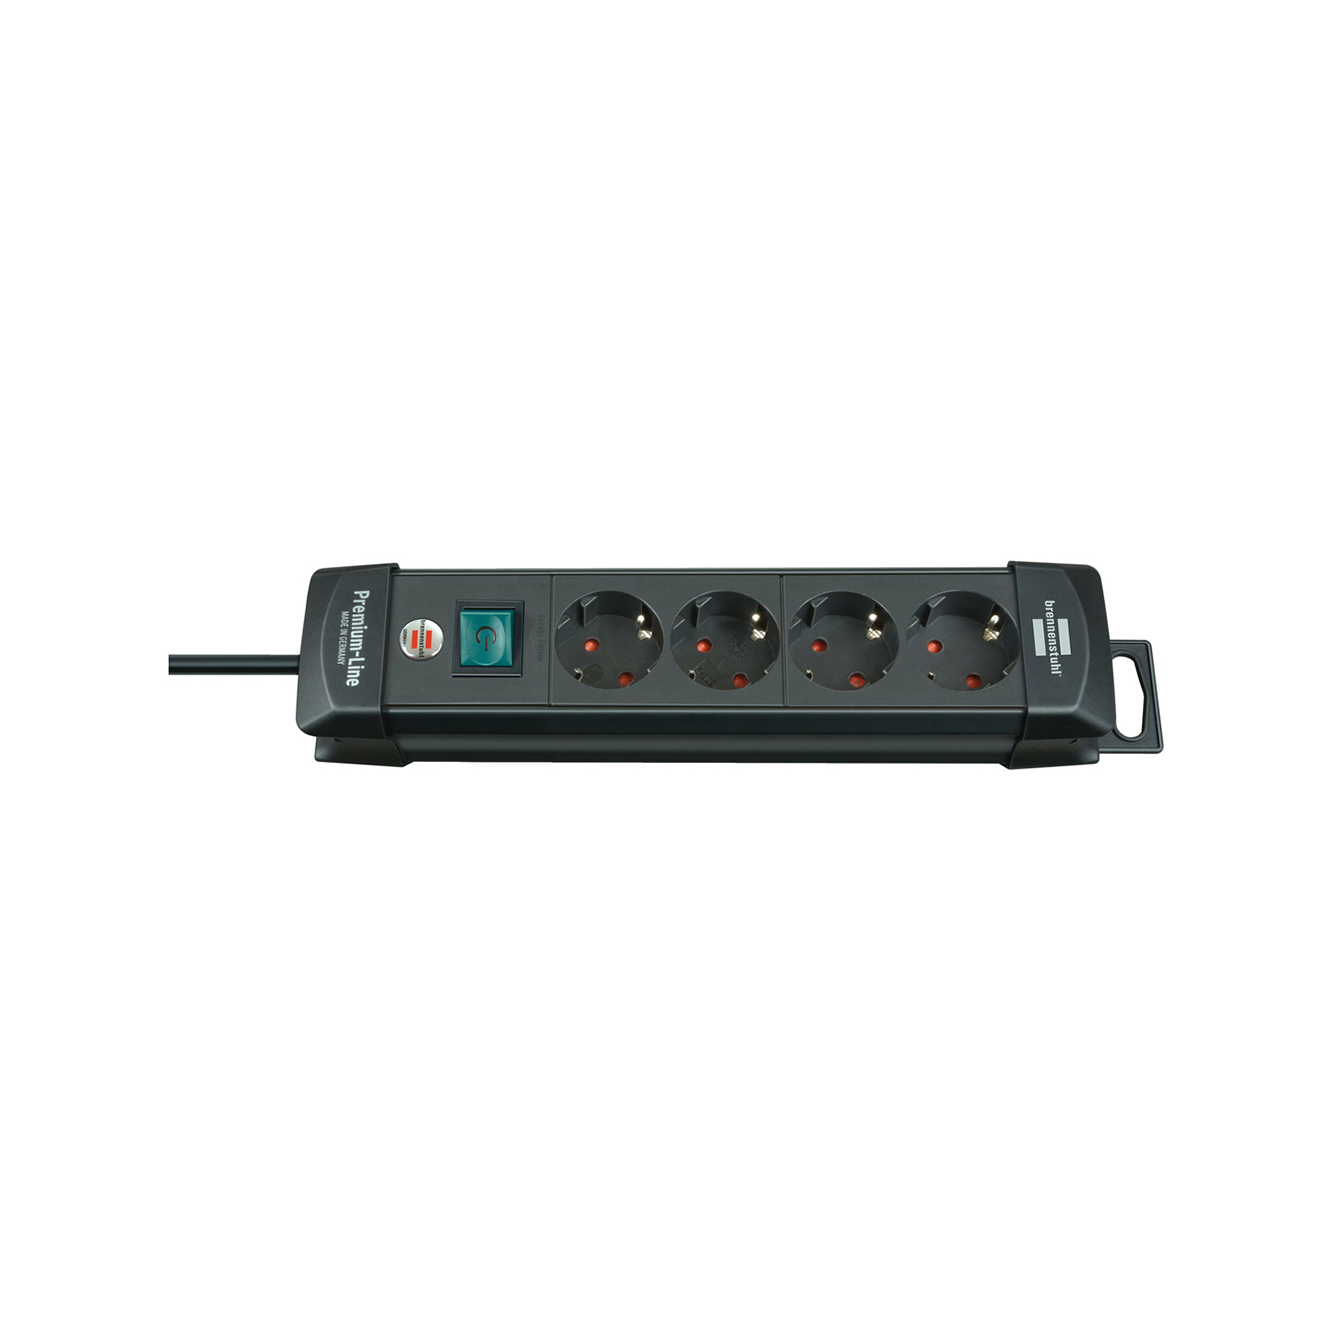 Удлинитель Brennenstuhl Premium-Line 4 розетки кабель 1,8 м H05VV-F 3G1,5 черный 1951140100